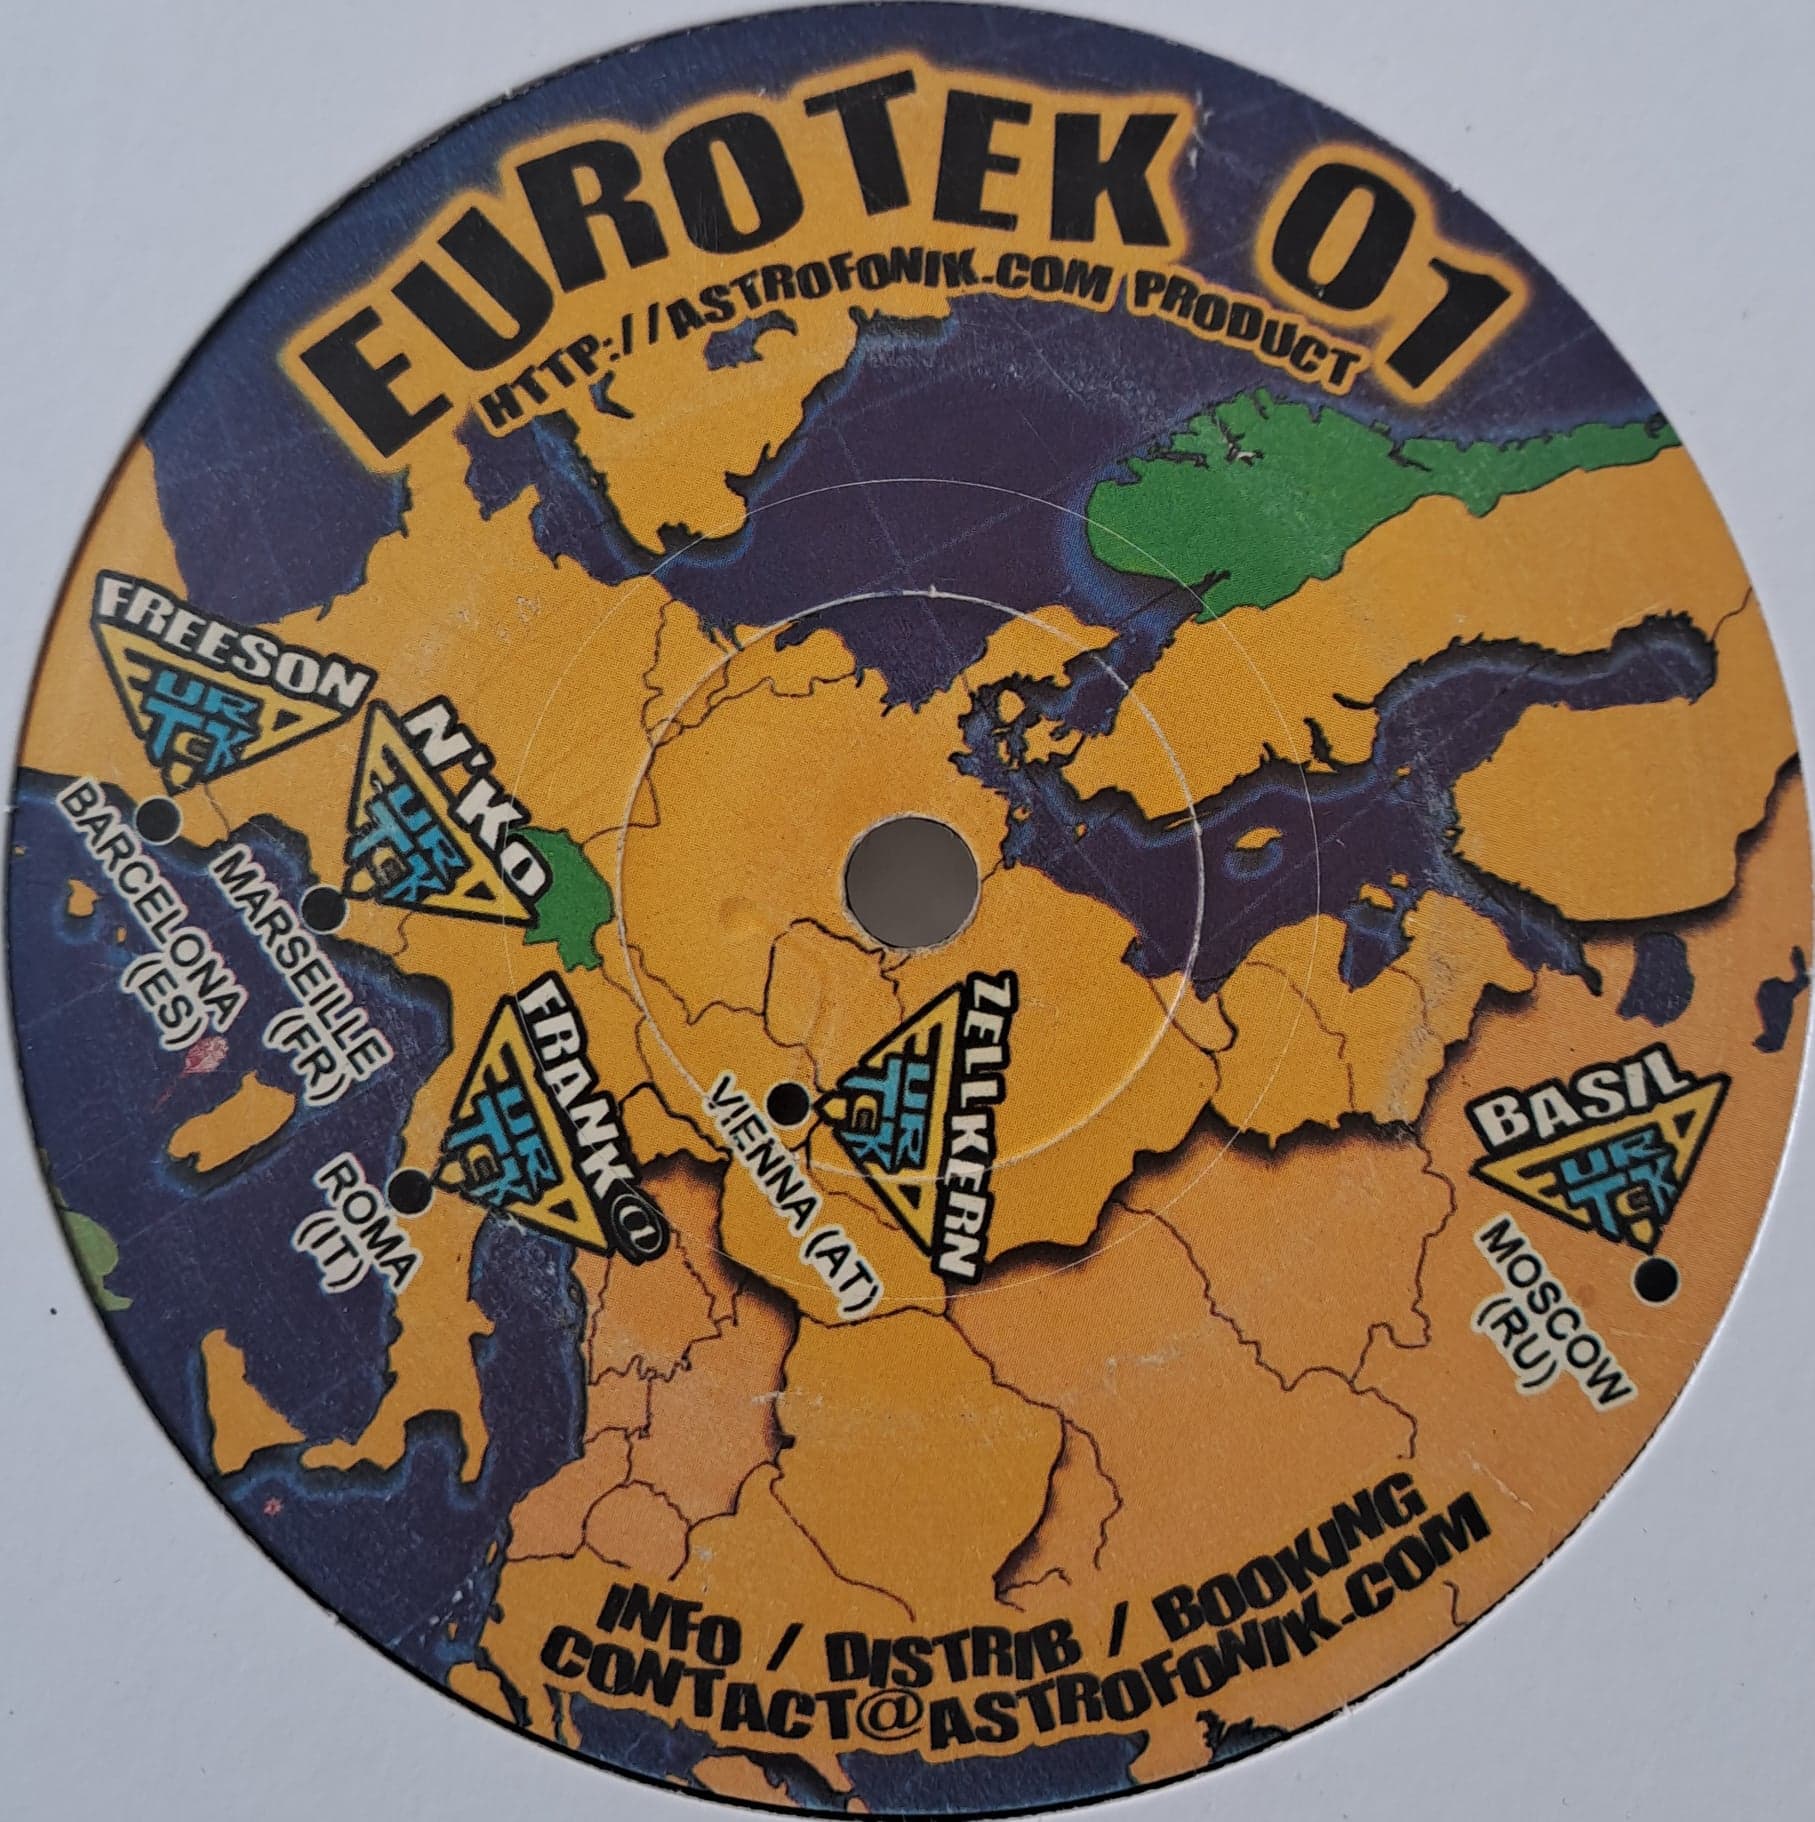 Eurotek 01 - vinyle freetekno